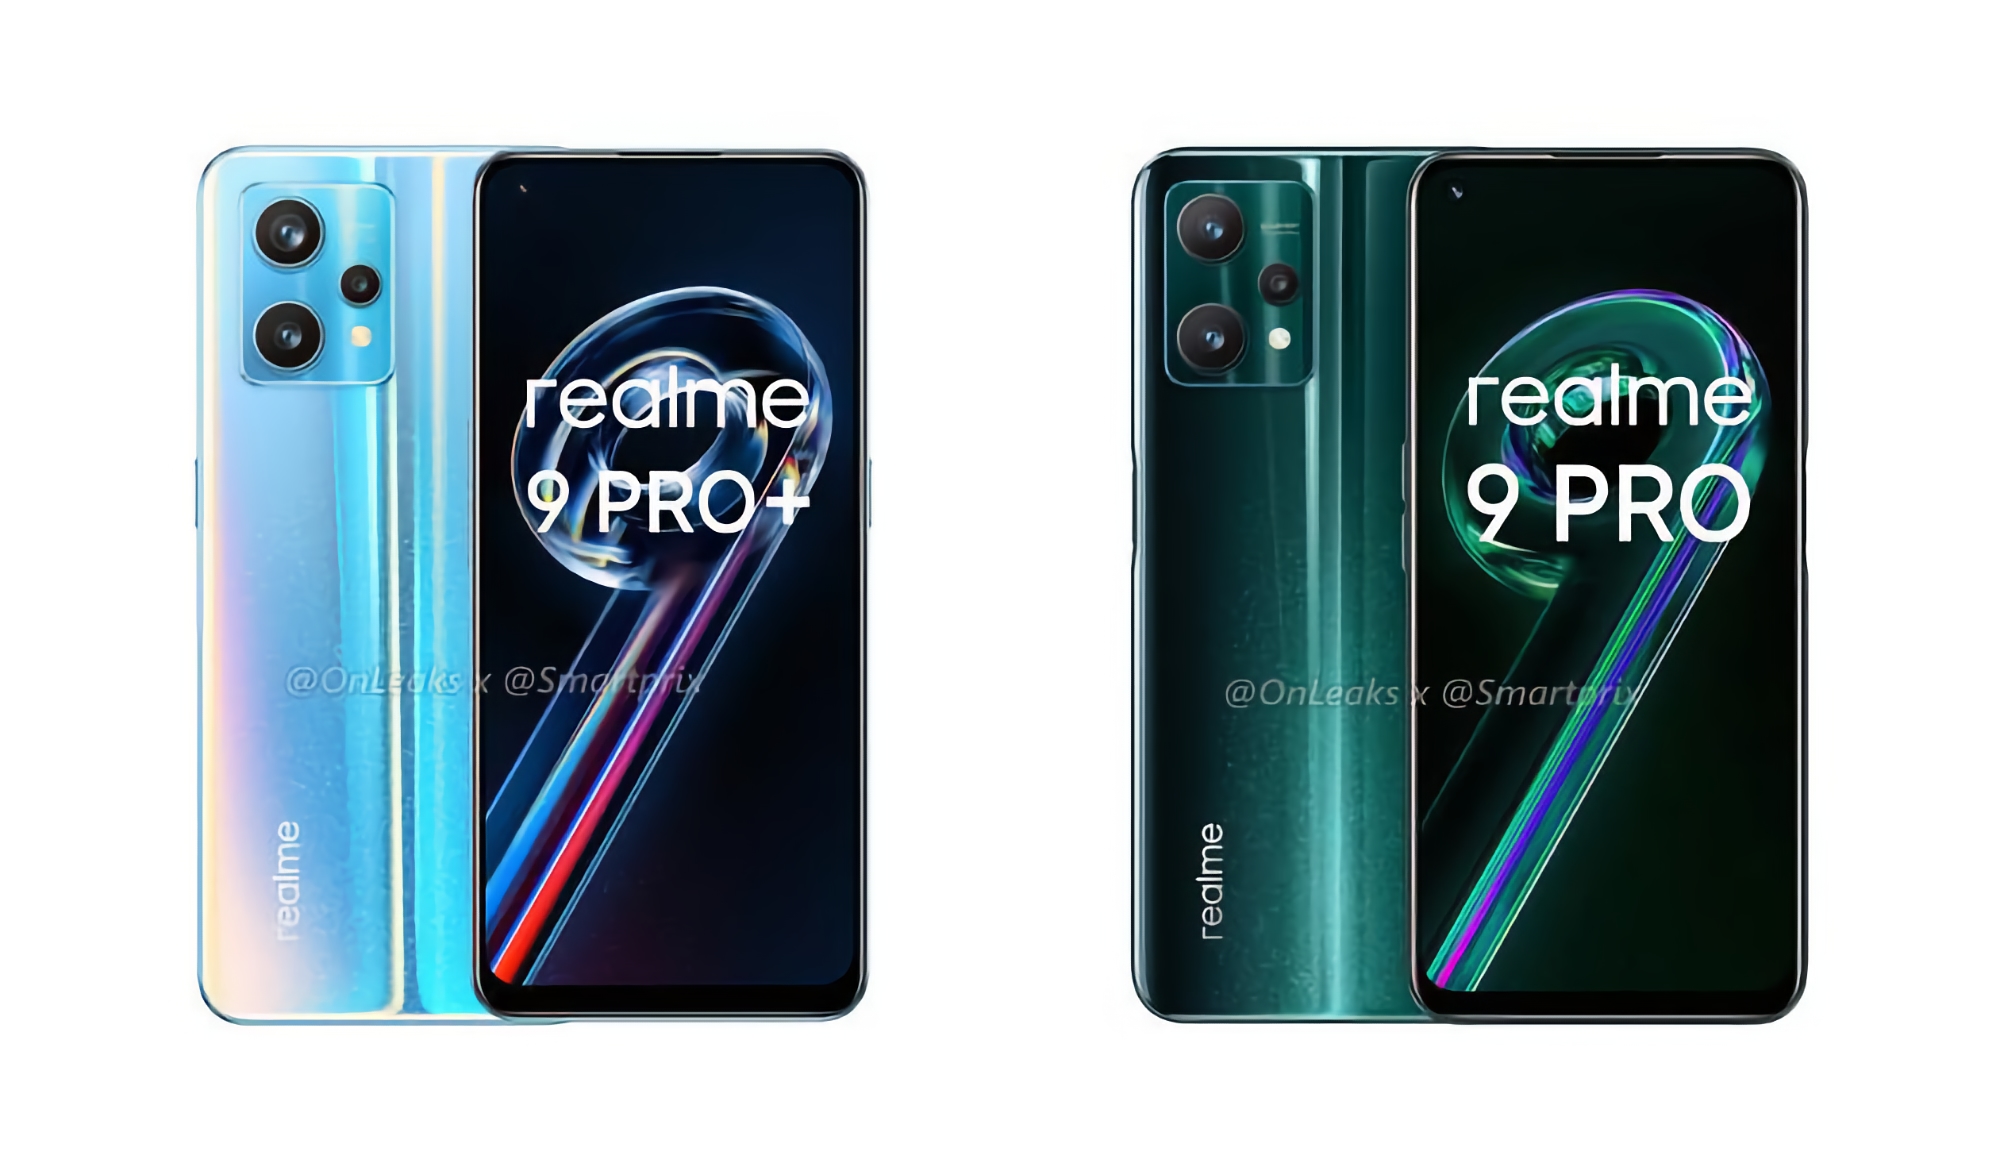 Bestätigt: Realme 9 Pro und Realme 9 Pro+ werden am 15. Februar in Europa eingeführt